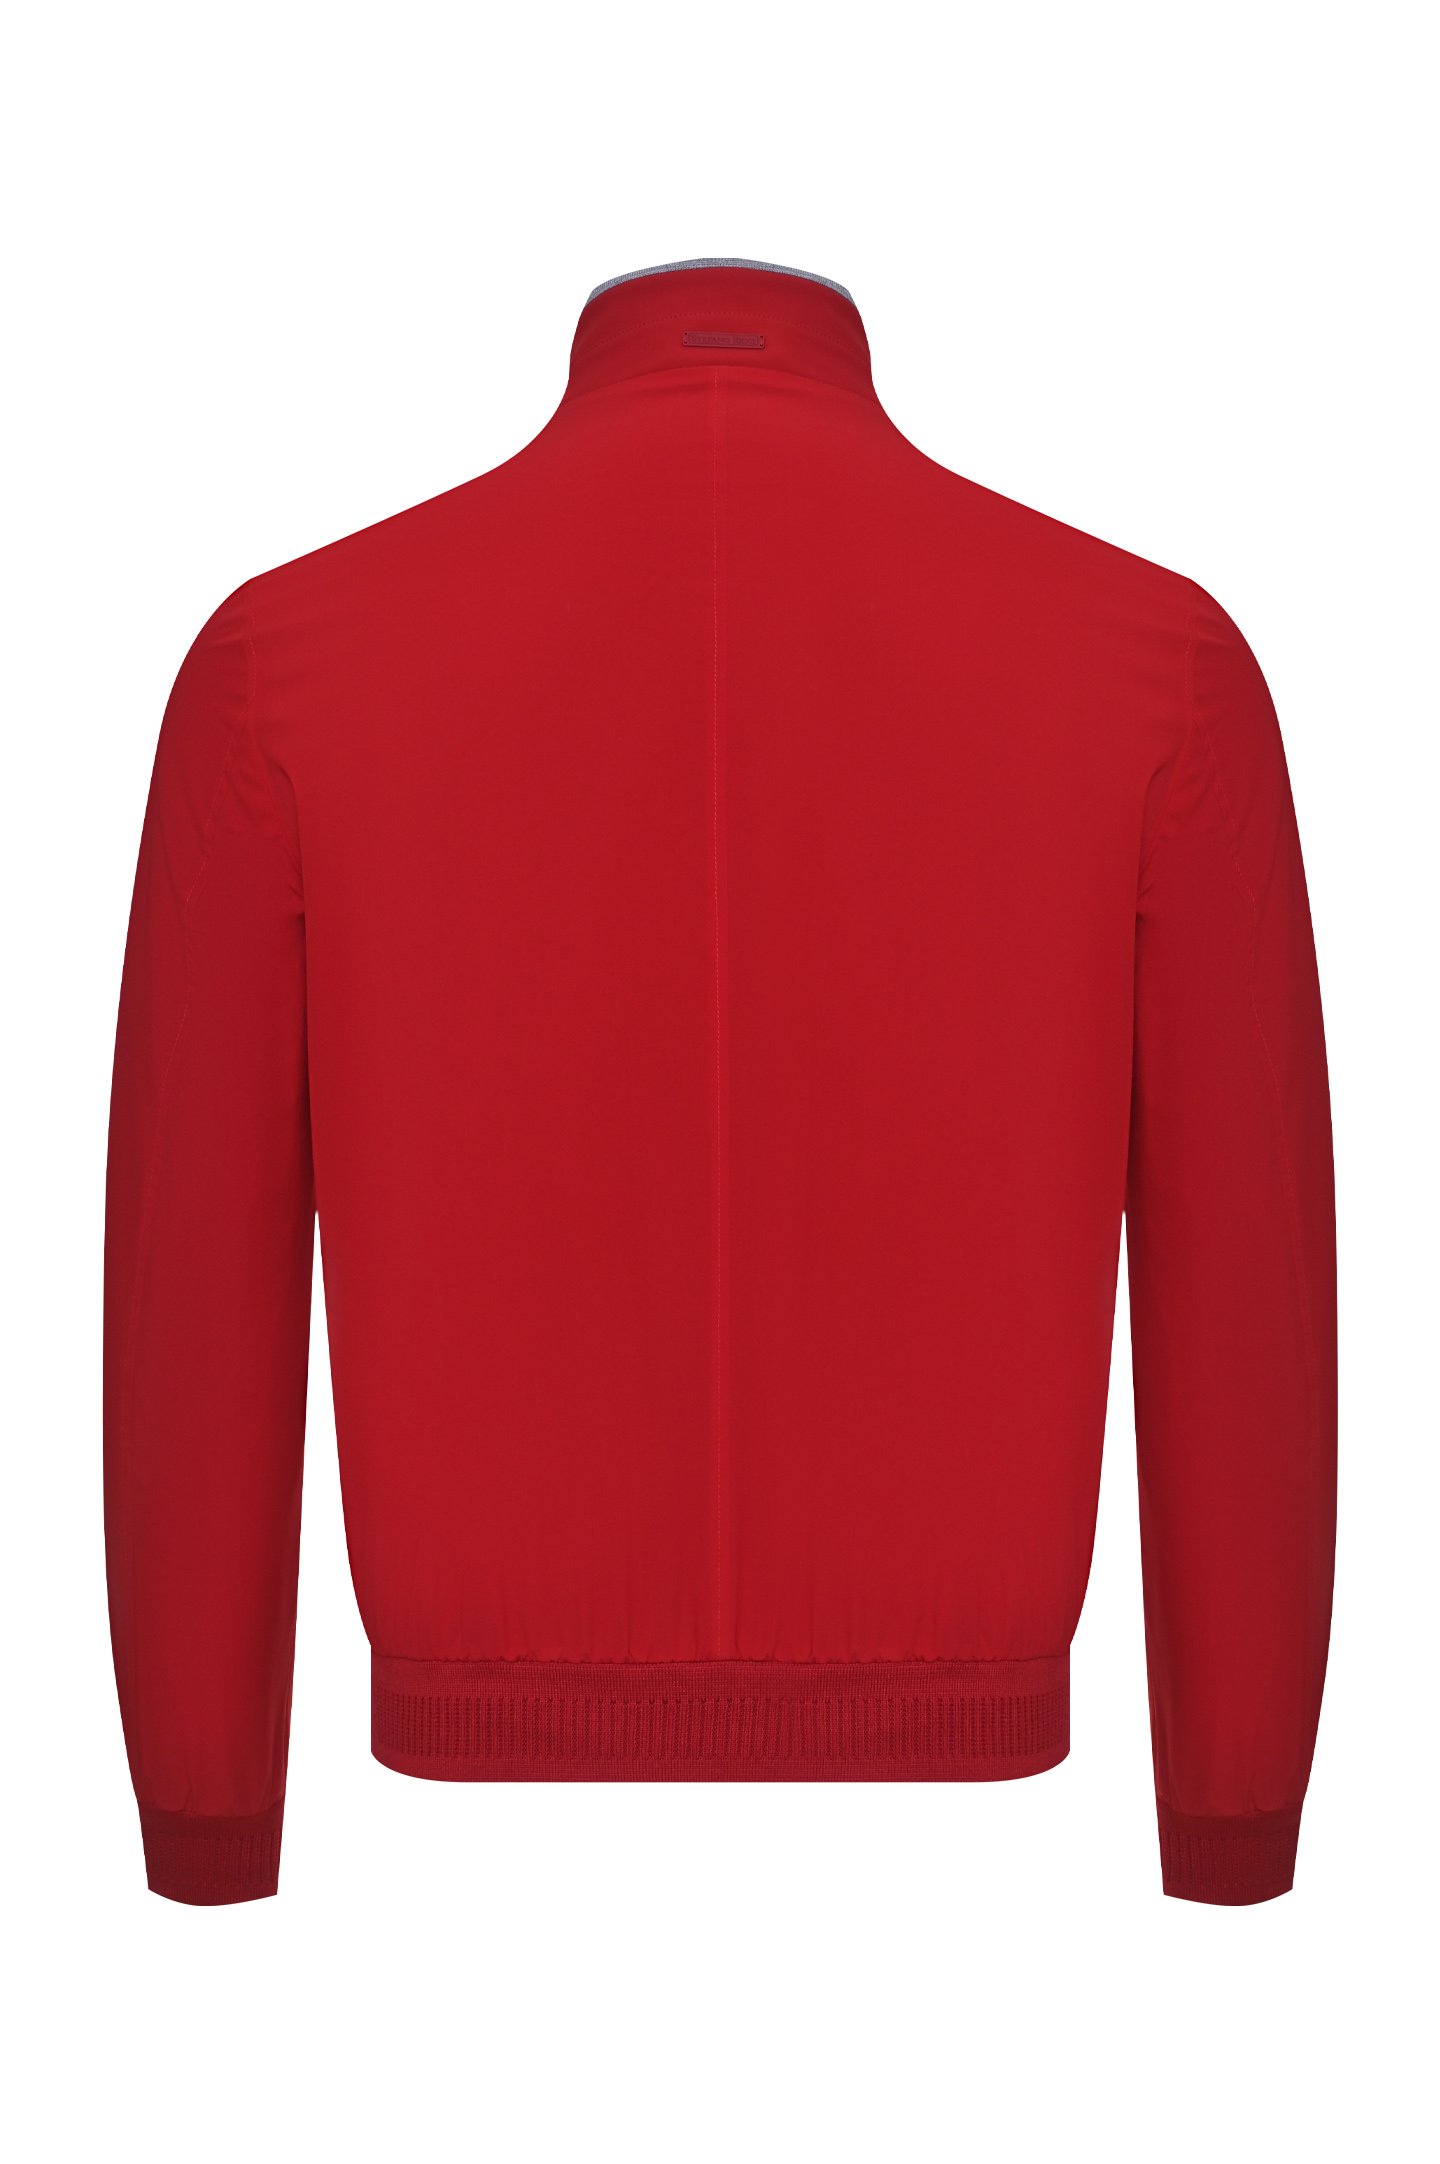 Куртка STEFANO RICCI MDJ0100340 4508, цвет: Красный, Мужской